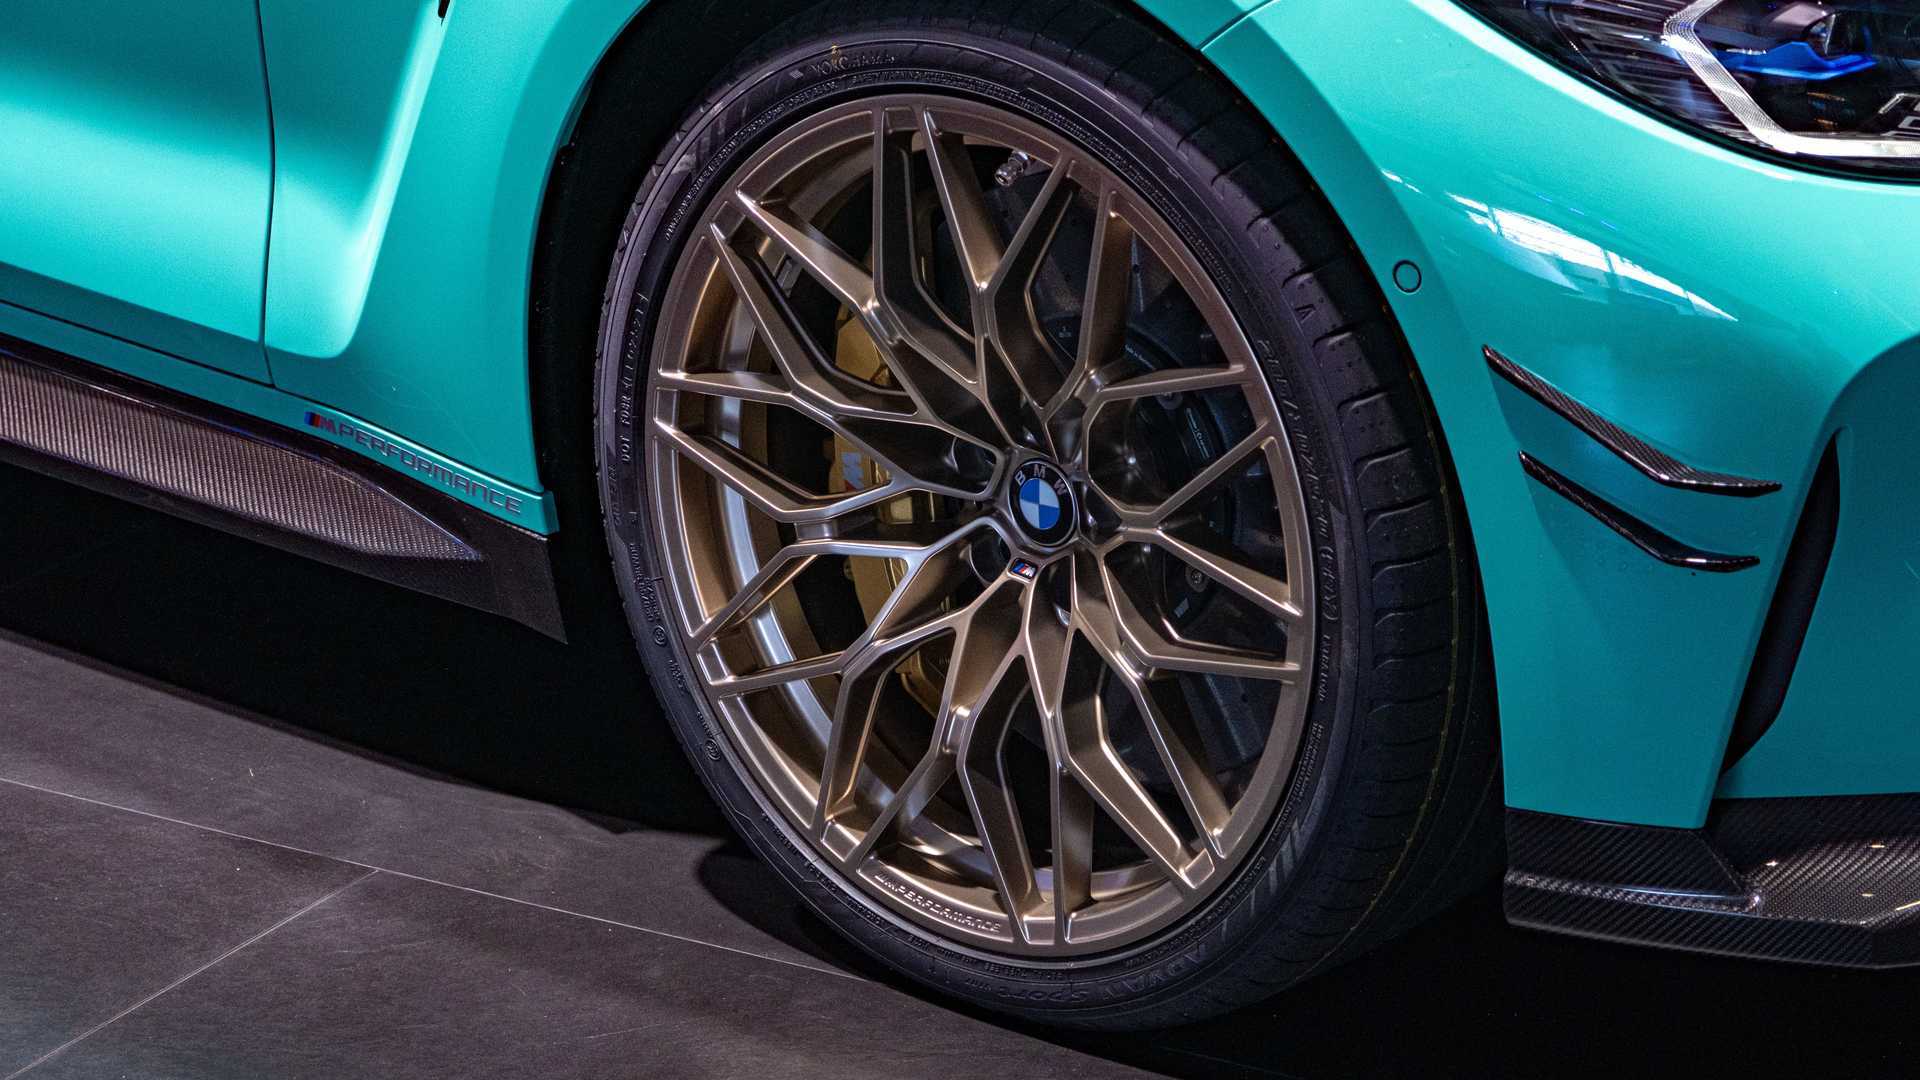 Chiêm ngưỡng xe sang BMW M4 màu xanh Mint lạ mắt